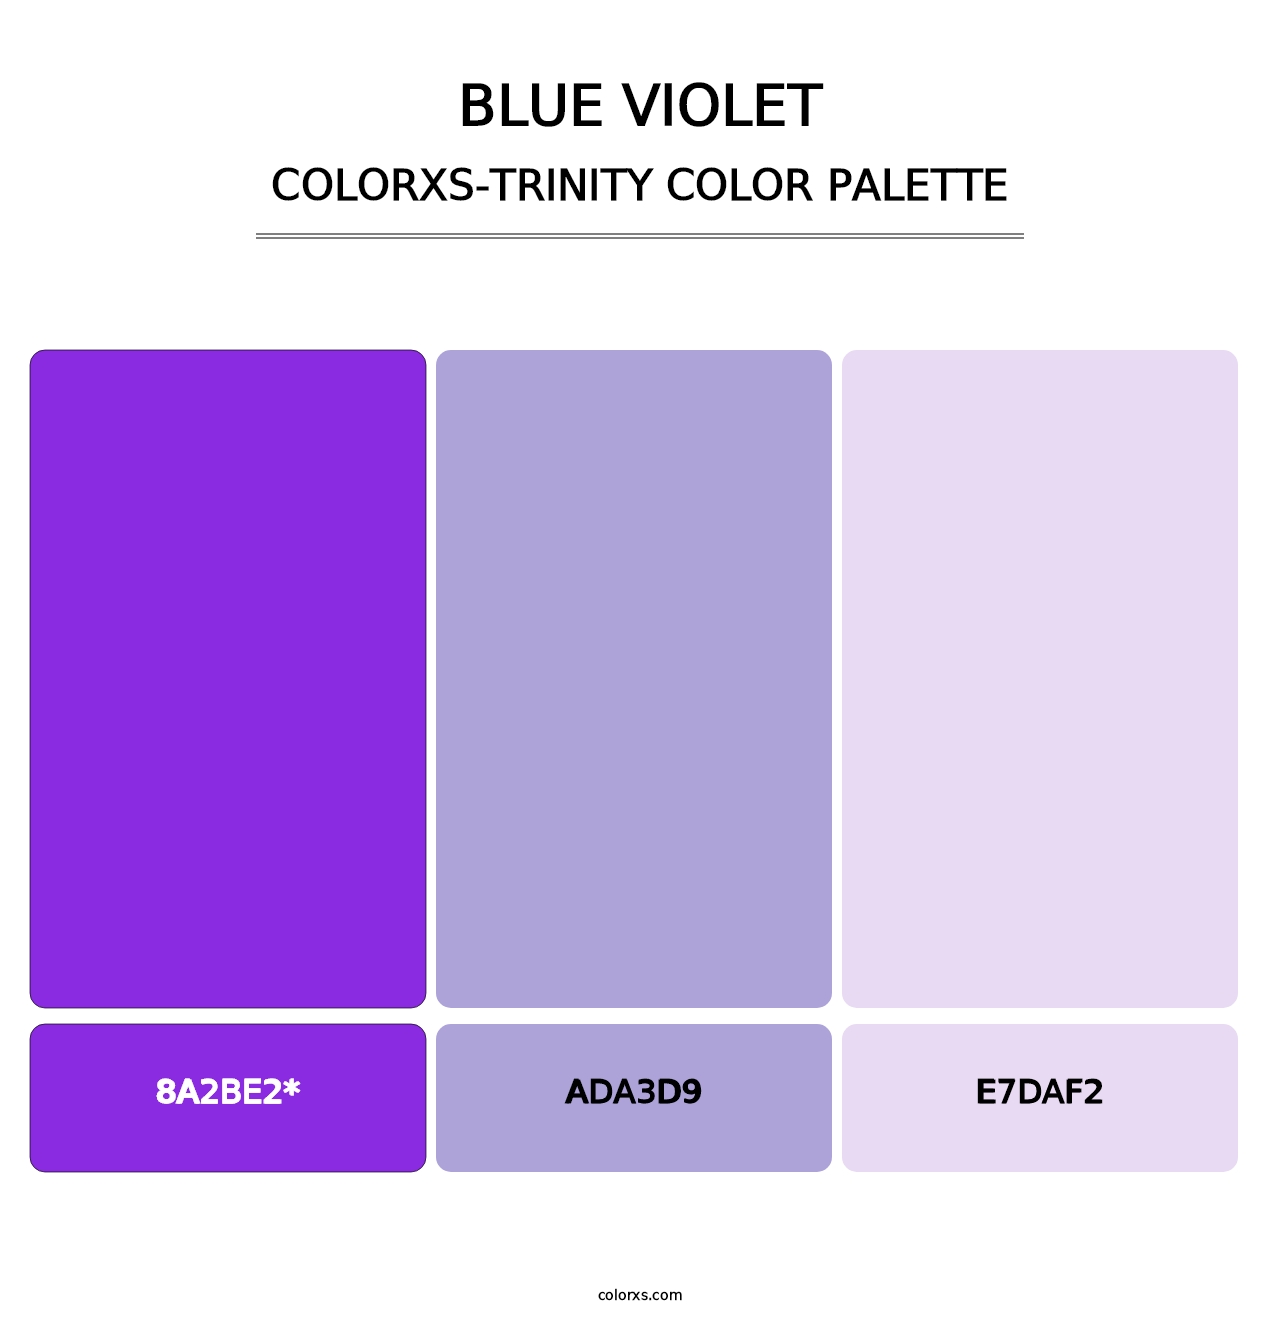 Blue Violet - Colorxs Trinity Palette